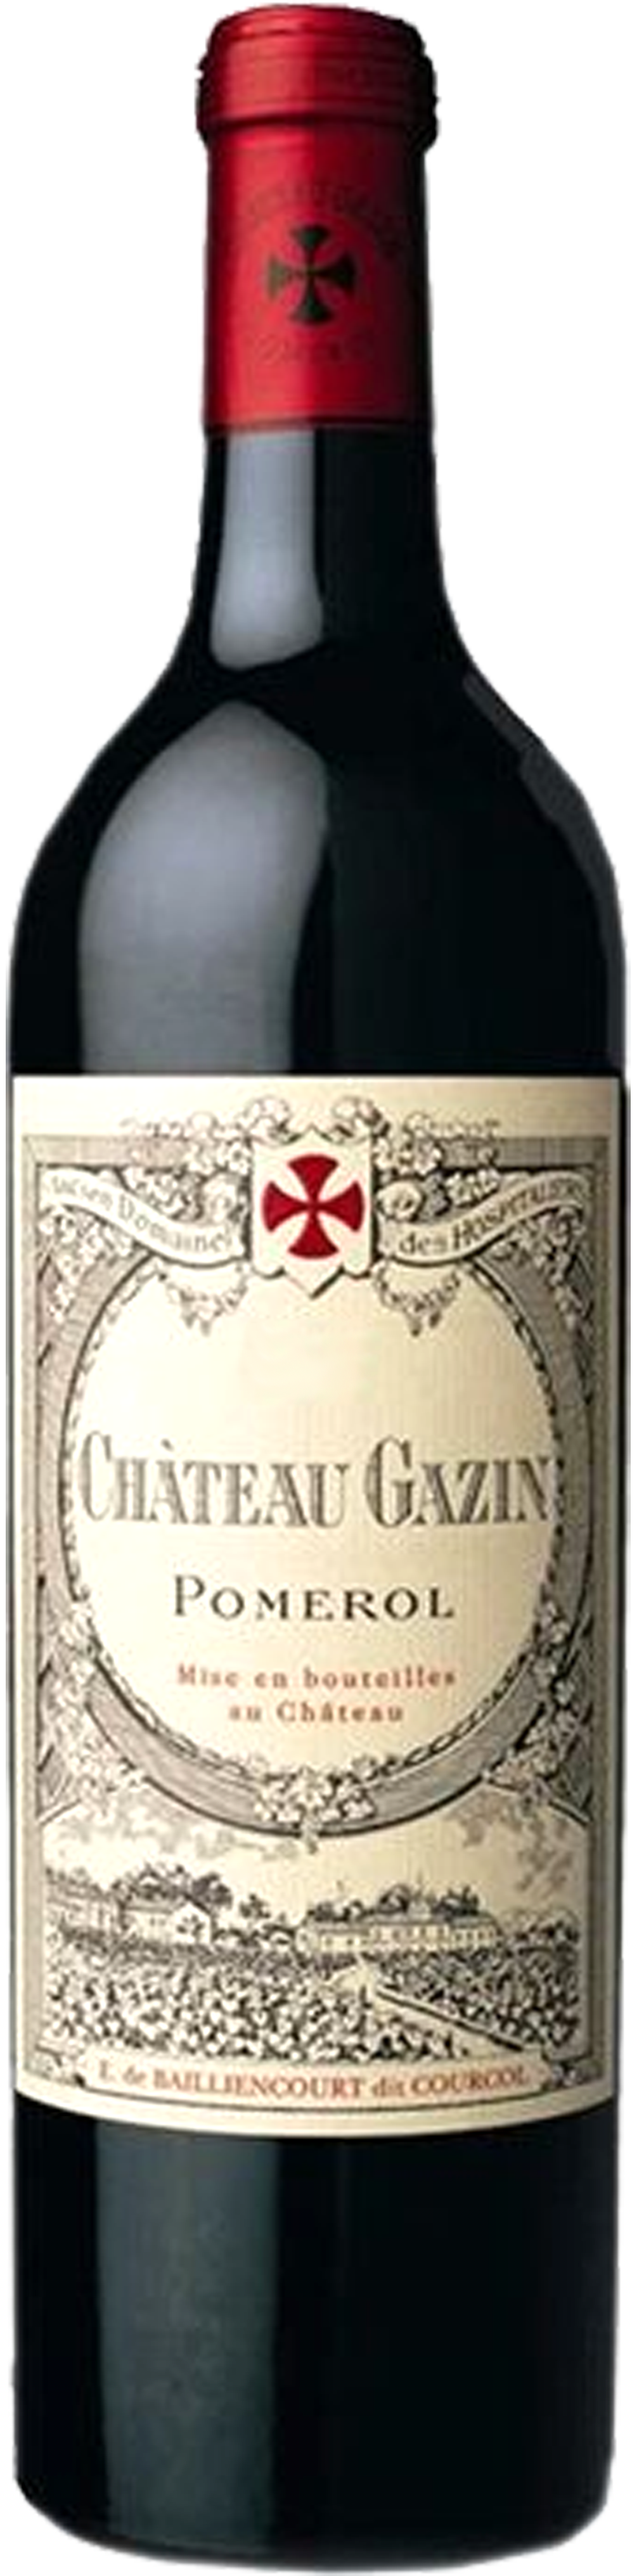 Bottle shot of 2012 Château Gazin, Pomerol